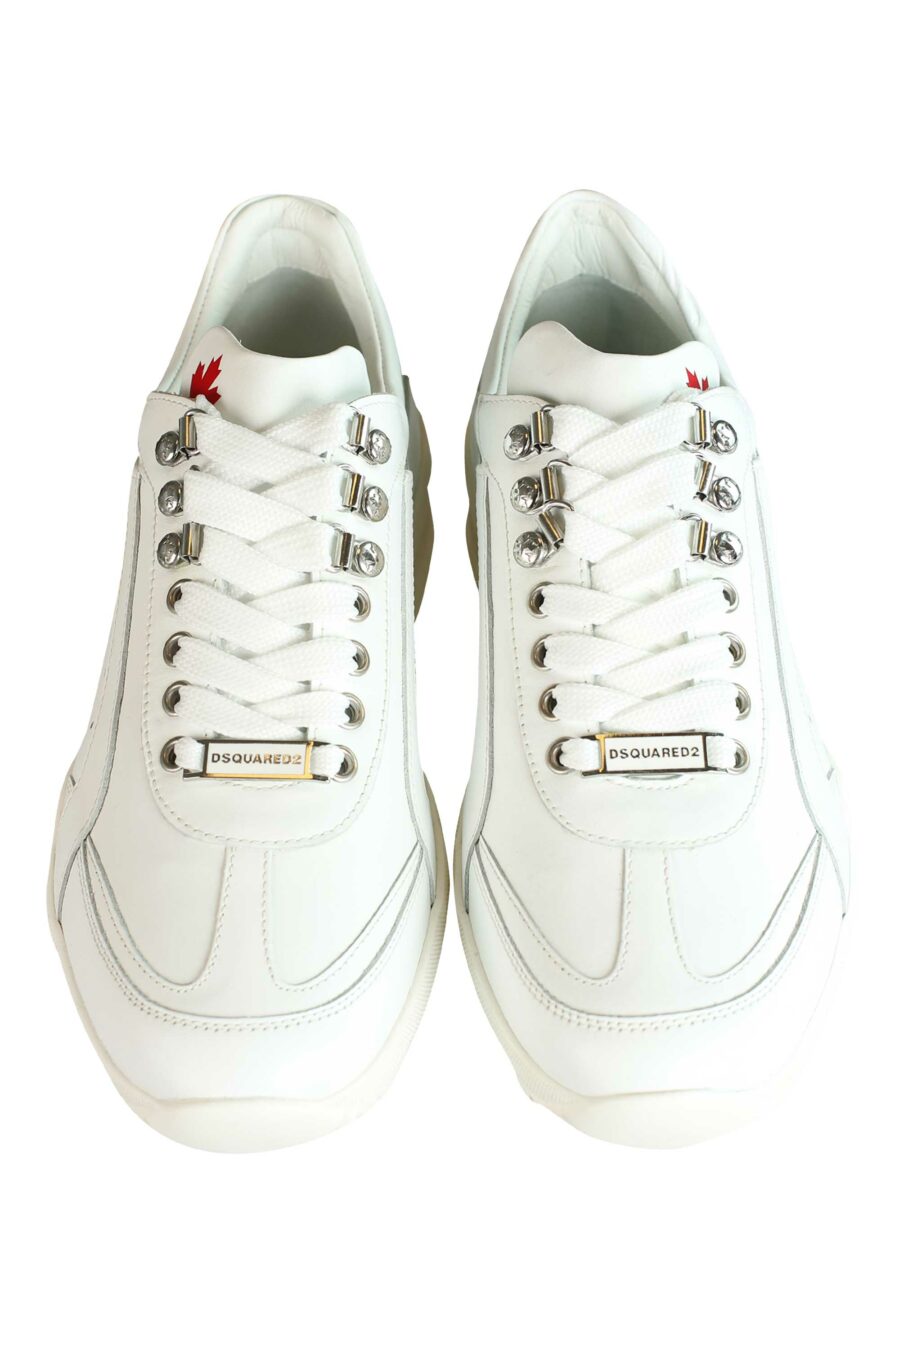 Zapatillas blancas "original legend" con logo - 8055777187357 5